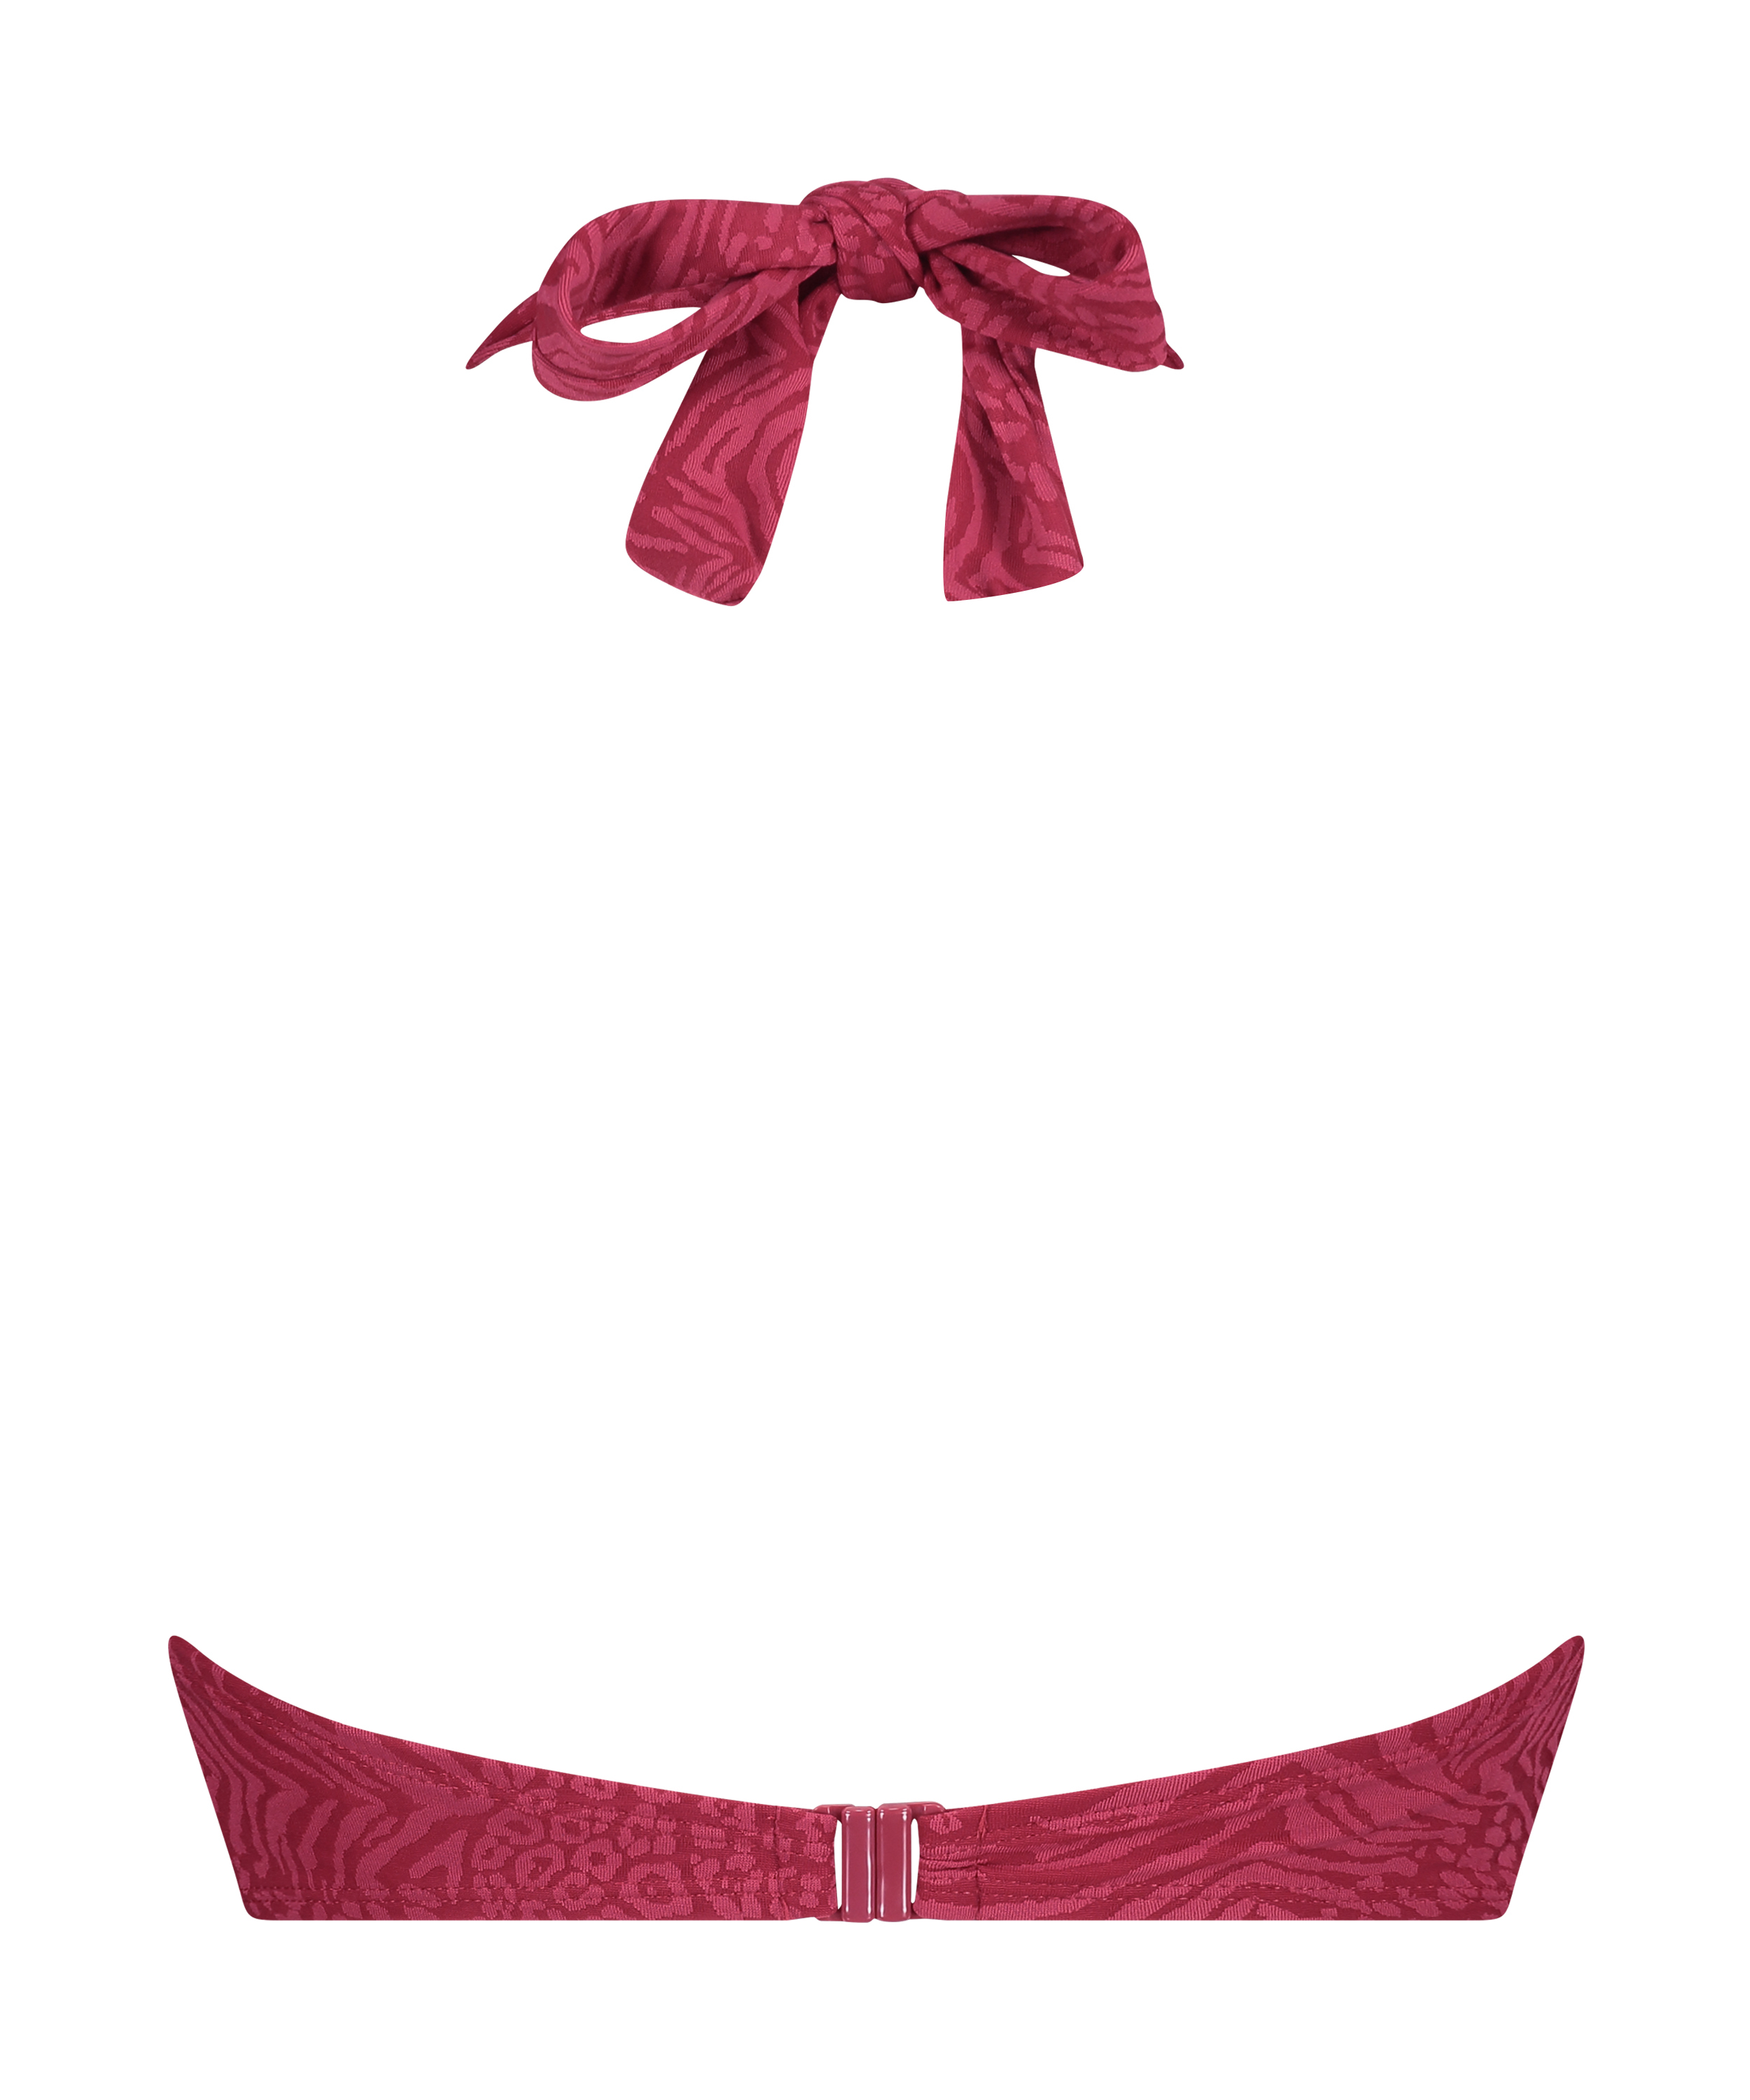 Kai Padded Push-Up Underwired Bikini Top, Red, main